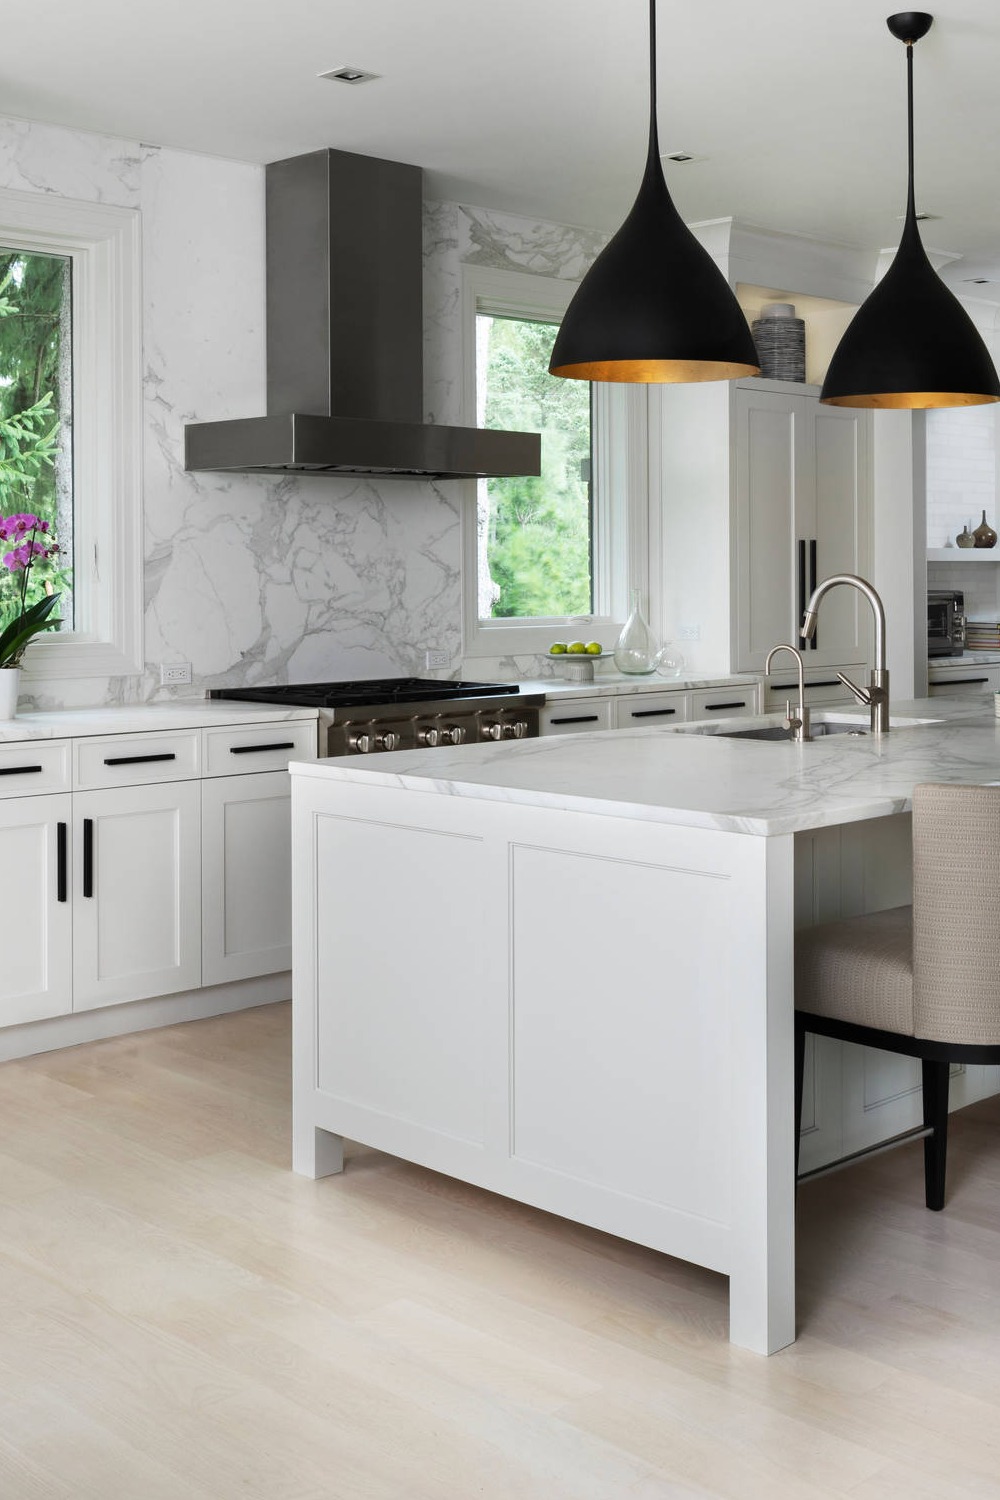 Light Wood Floor Shaker White Cabinets Marble Countertops Full Height Backsplash